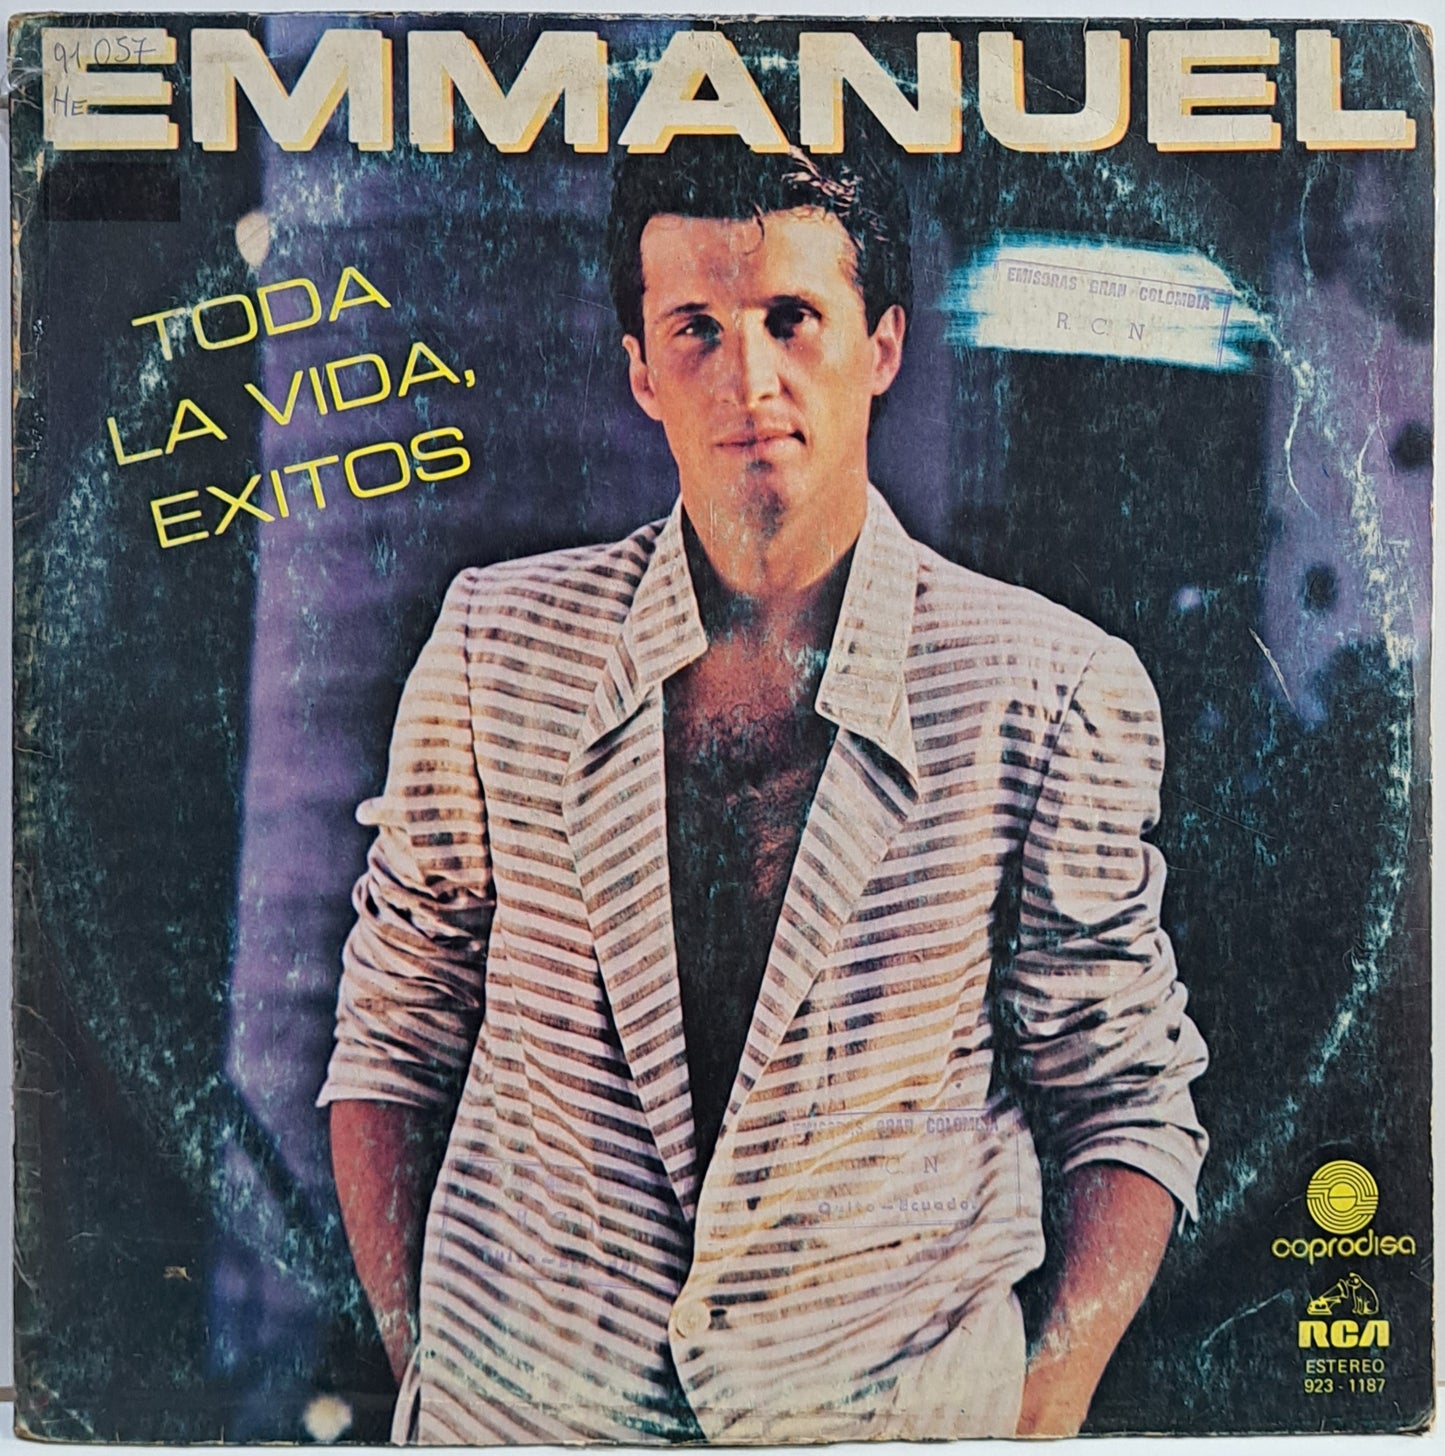 EMMANUEL - TODA LA VIDA, EXITOS  LP